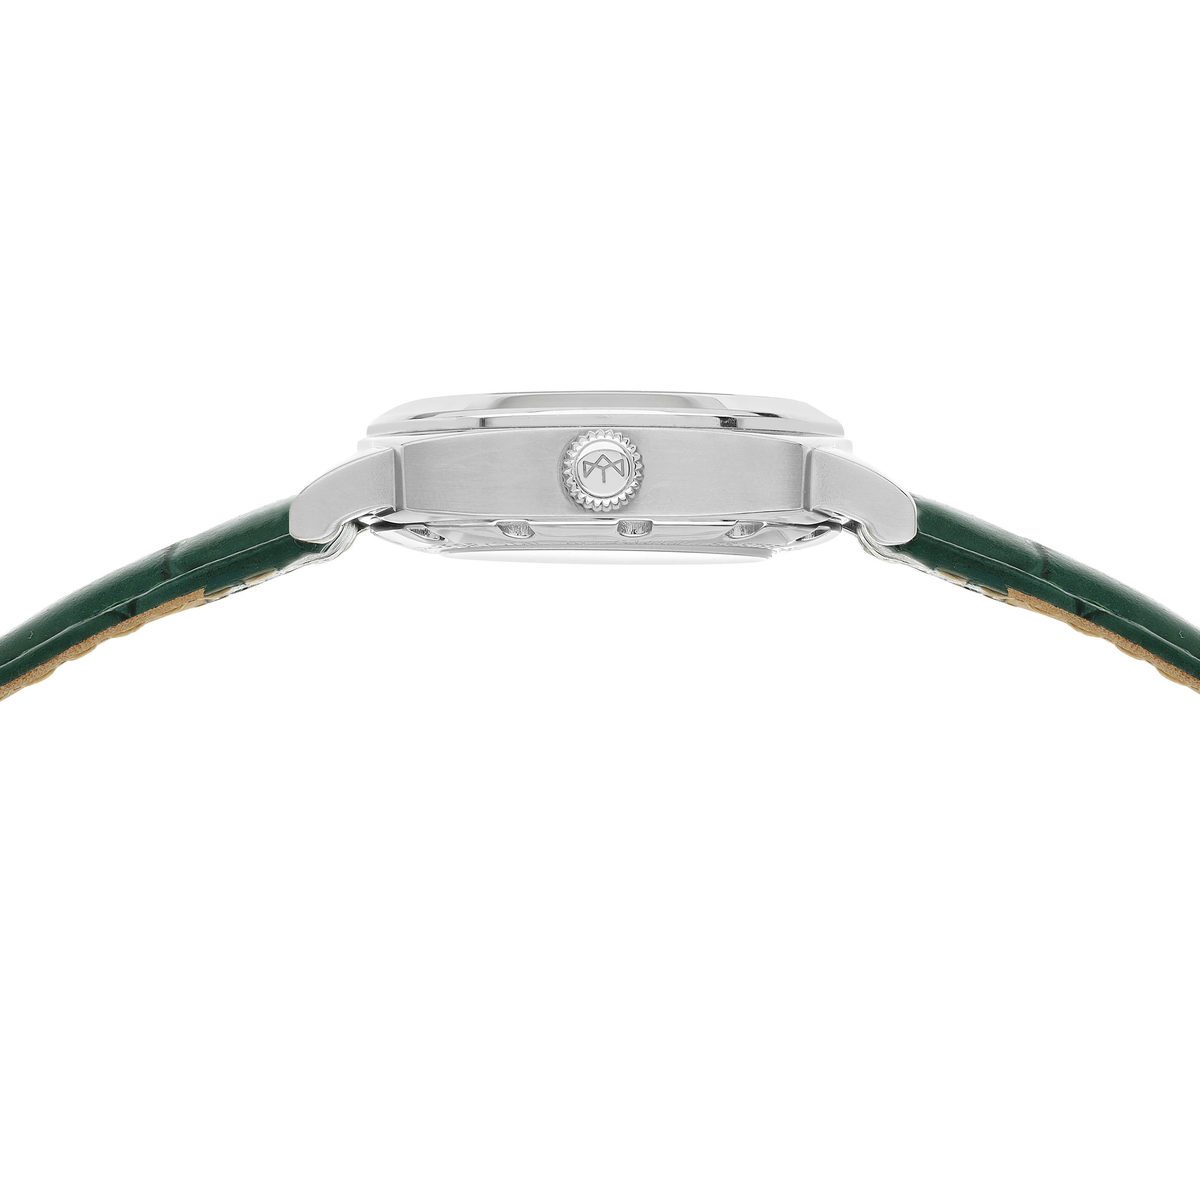 Montre MATY GM automatique cadran vert bracelet cuir vert - vue 2